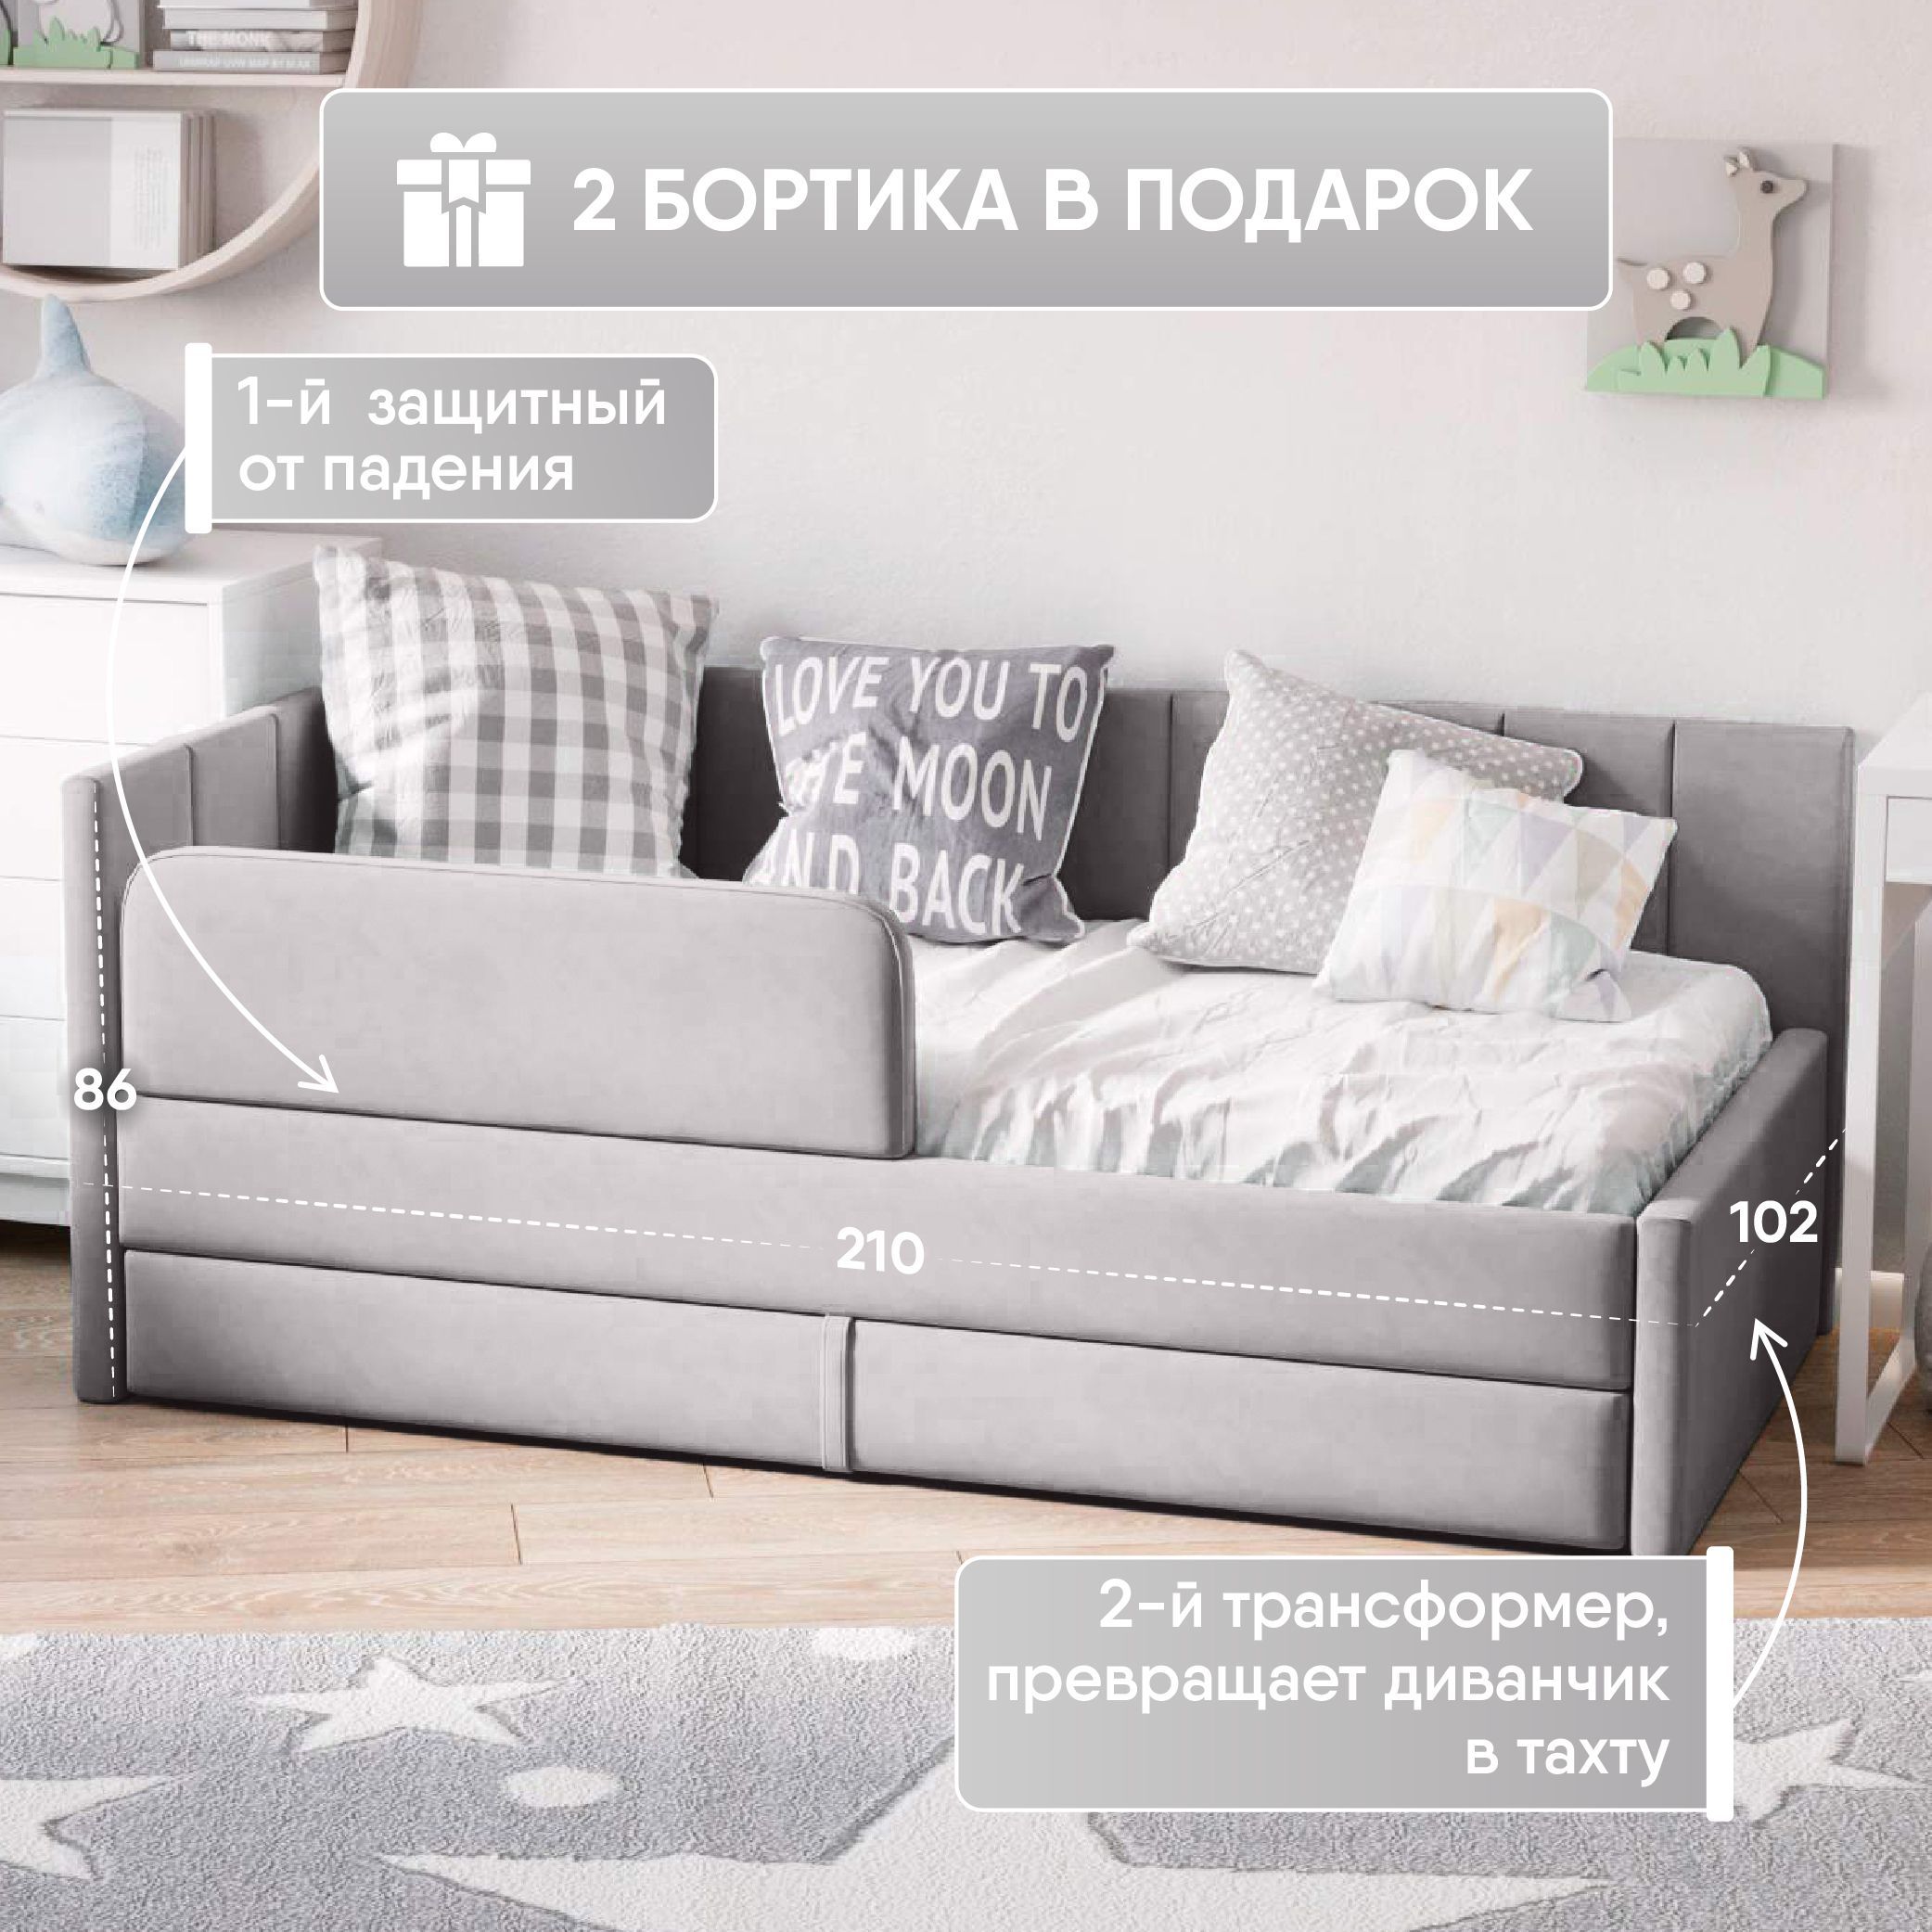 Диваны для подростков девочек - купить в Москве диван кровать для подростка девочки